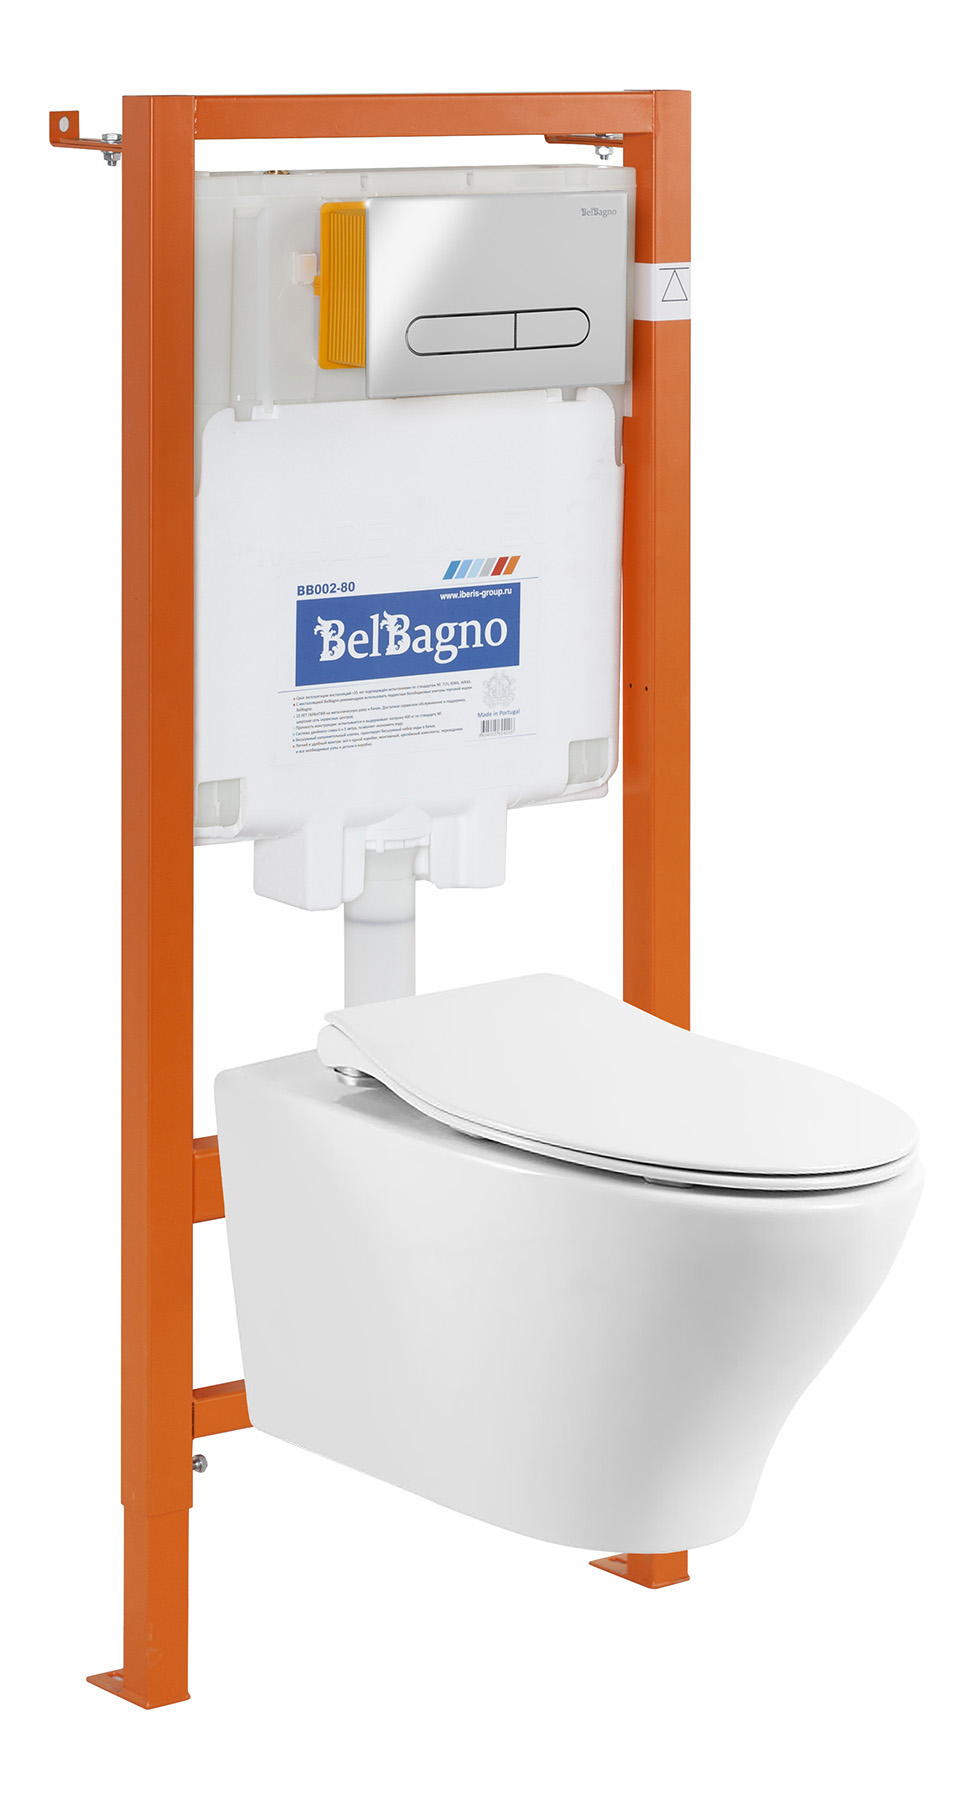 фото Belbagno комплект belbagno 4 в 1 унитаз acqua bb340chr+система инсталляции bb002-80+кнопка